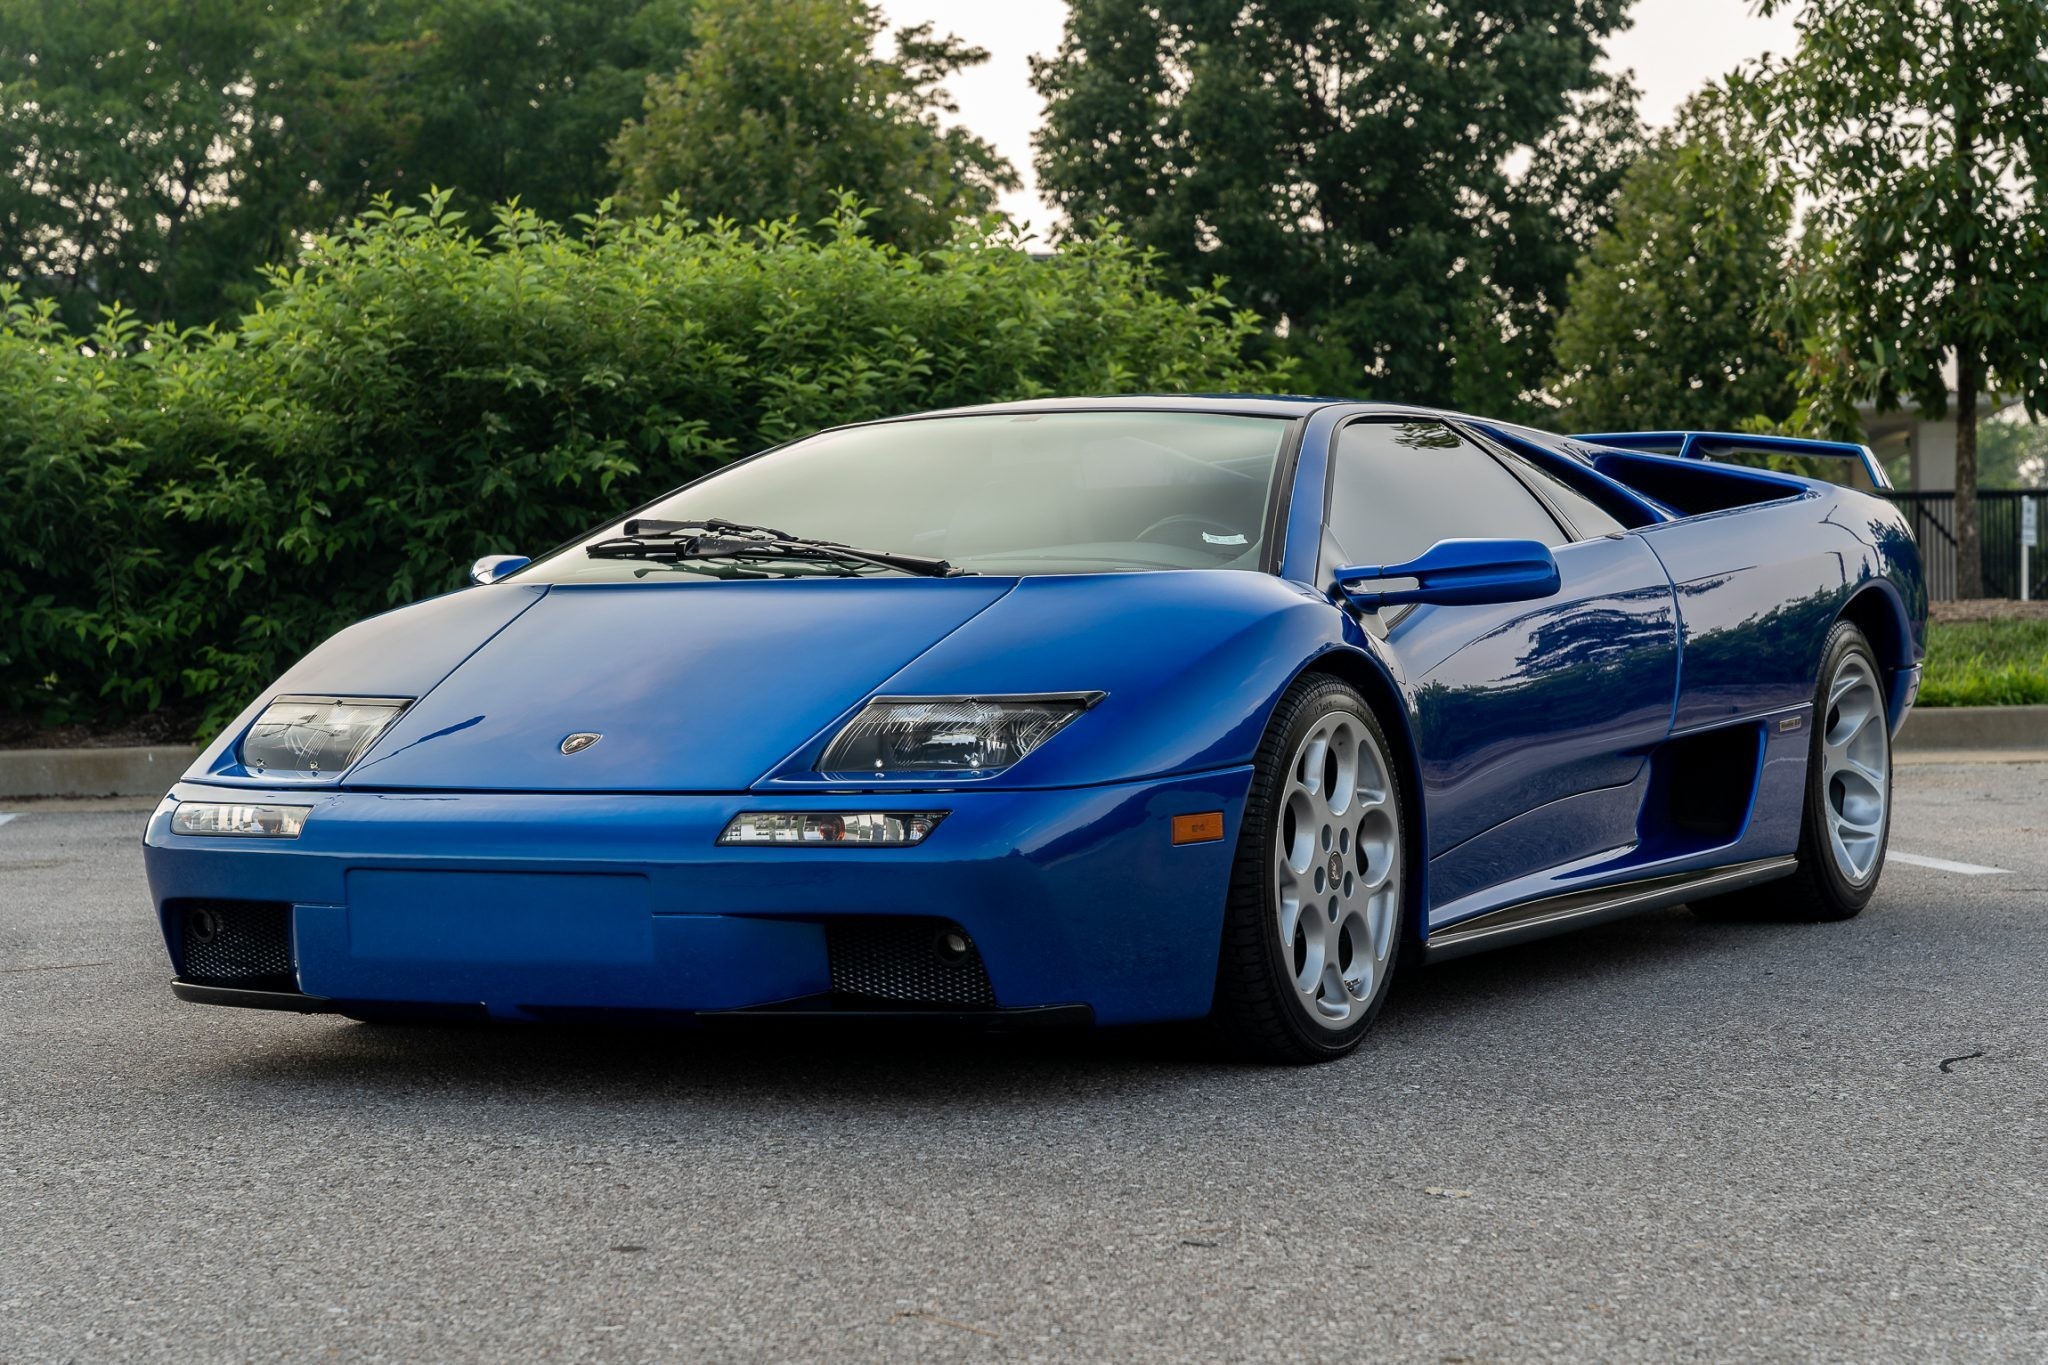 Lamborghini Diablo VT 2001 года выпуска в цвете Monterey Blue